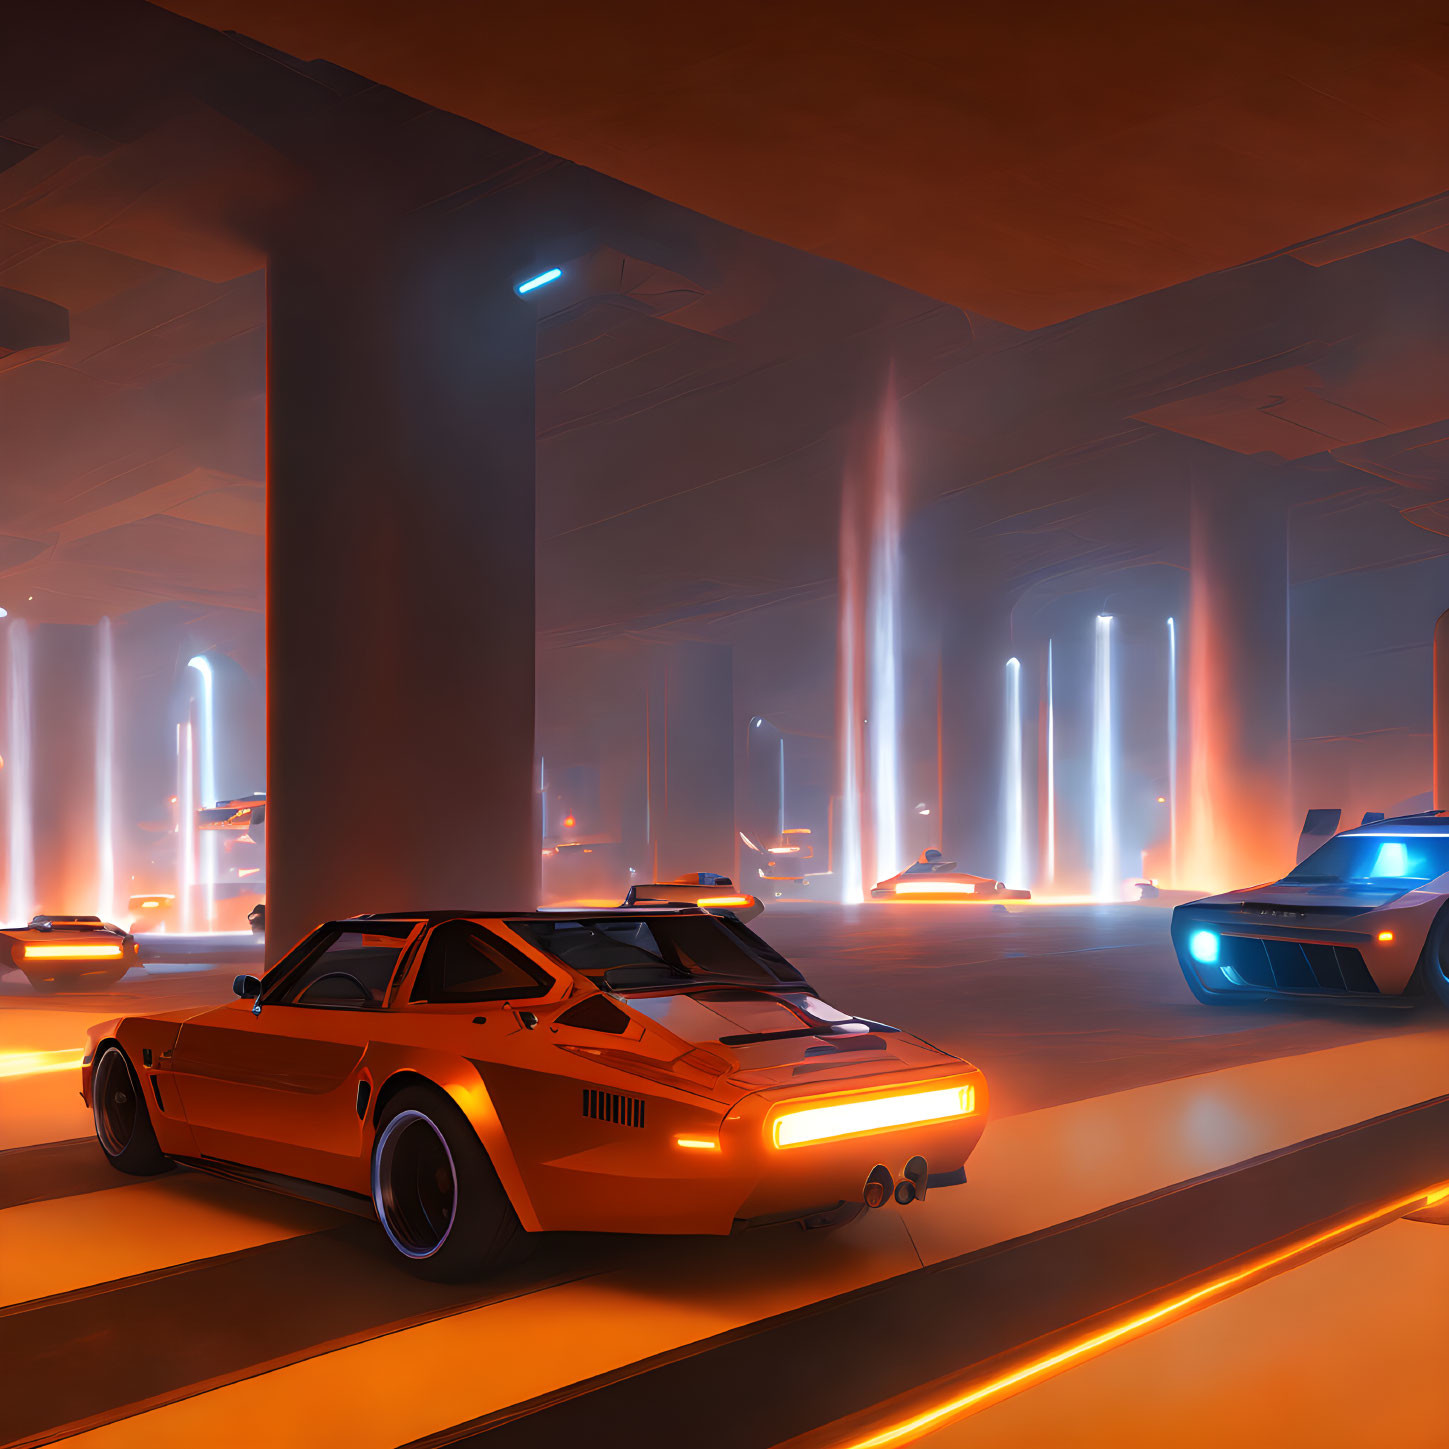 Futuristic Orange Car in Illuminated Underground Garage